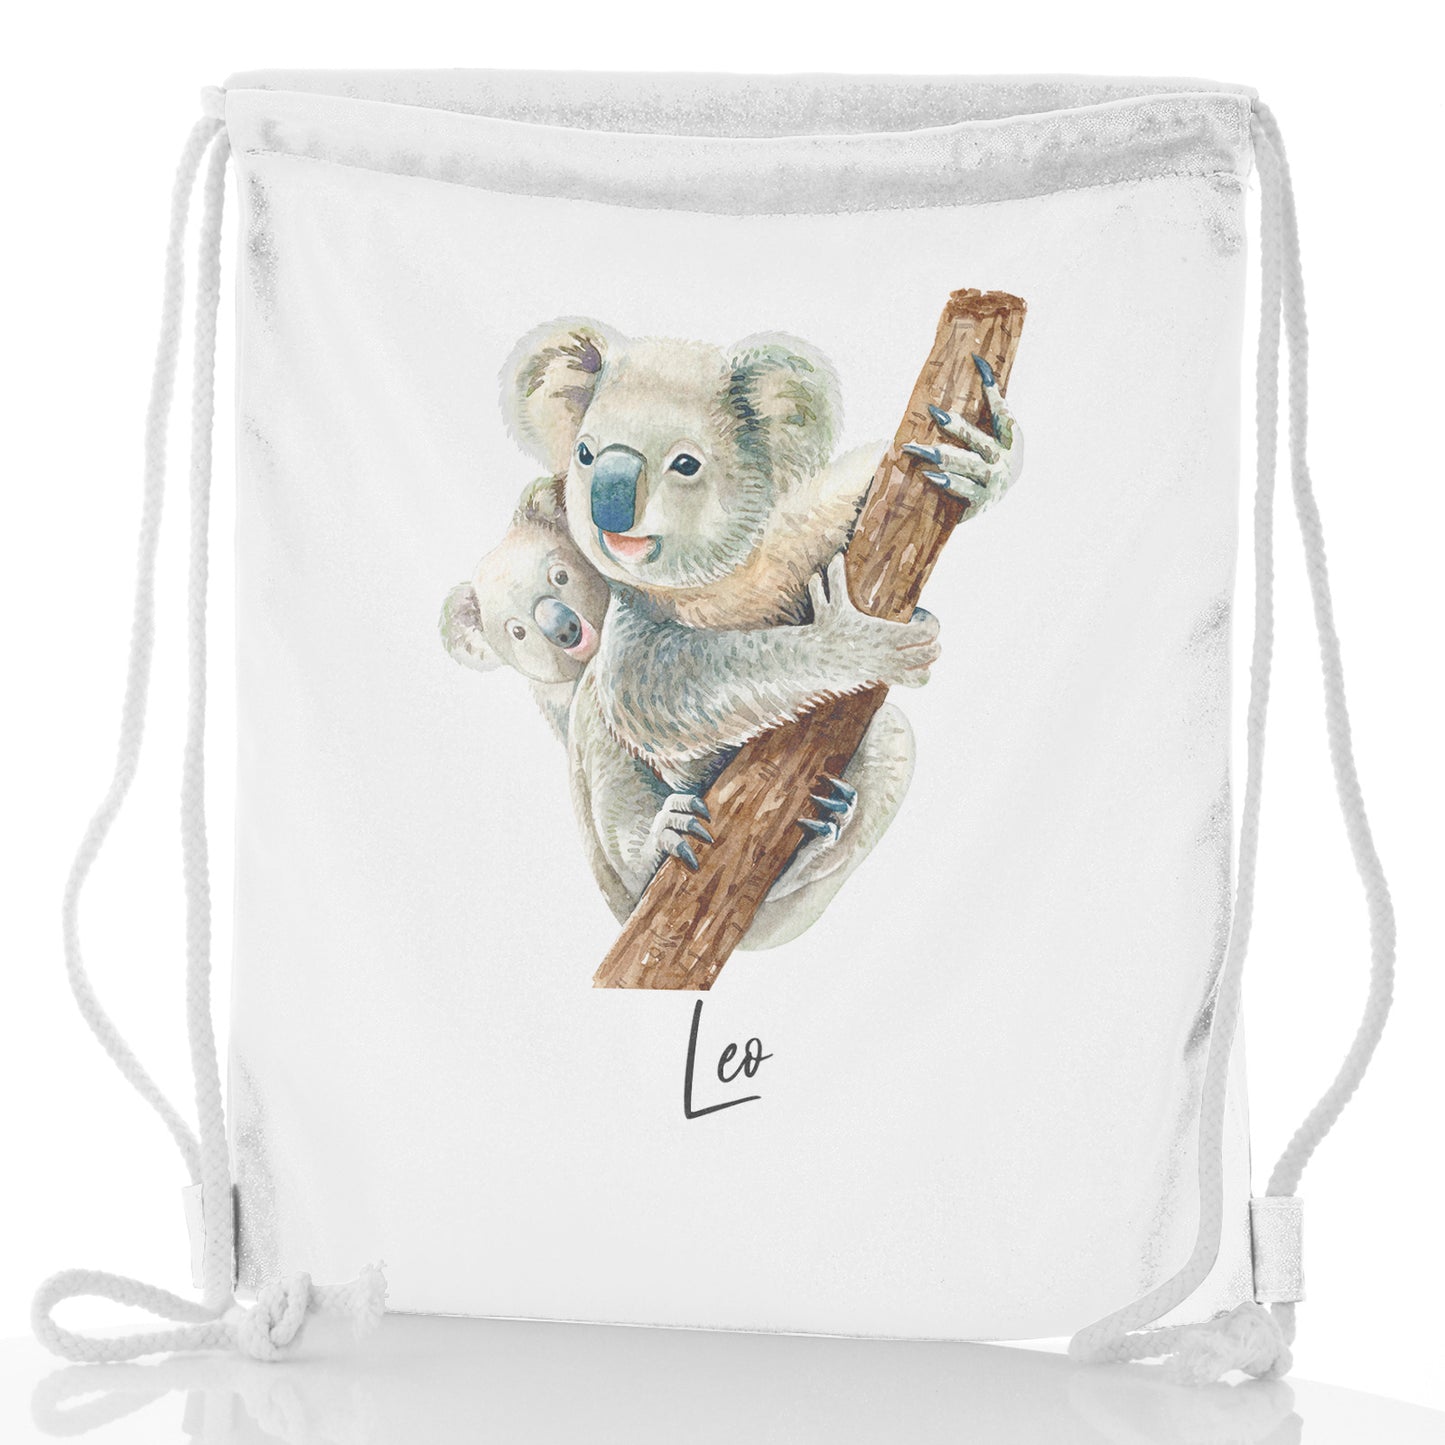 Personalisierter Glitzer-Rucksack mit Kordelzug, Begrüßungstext und kletternden Koalas für Mama und Baby